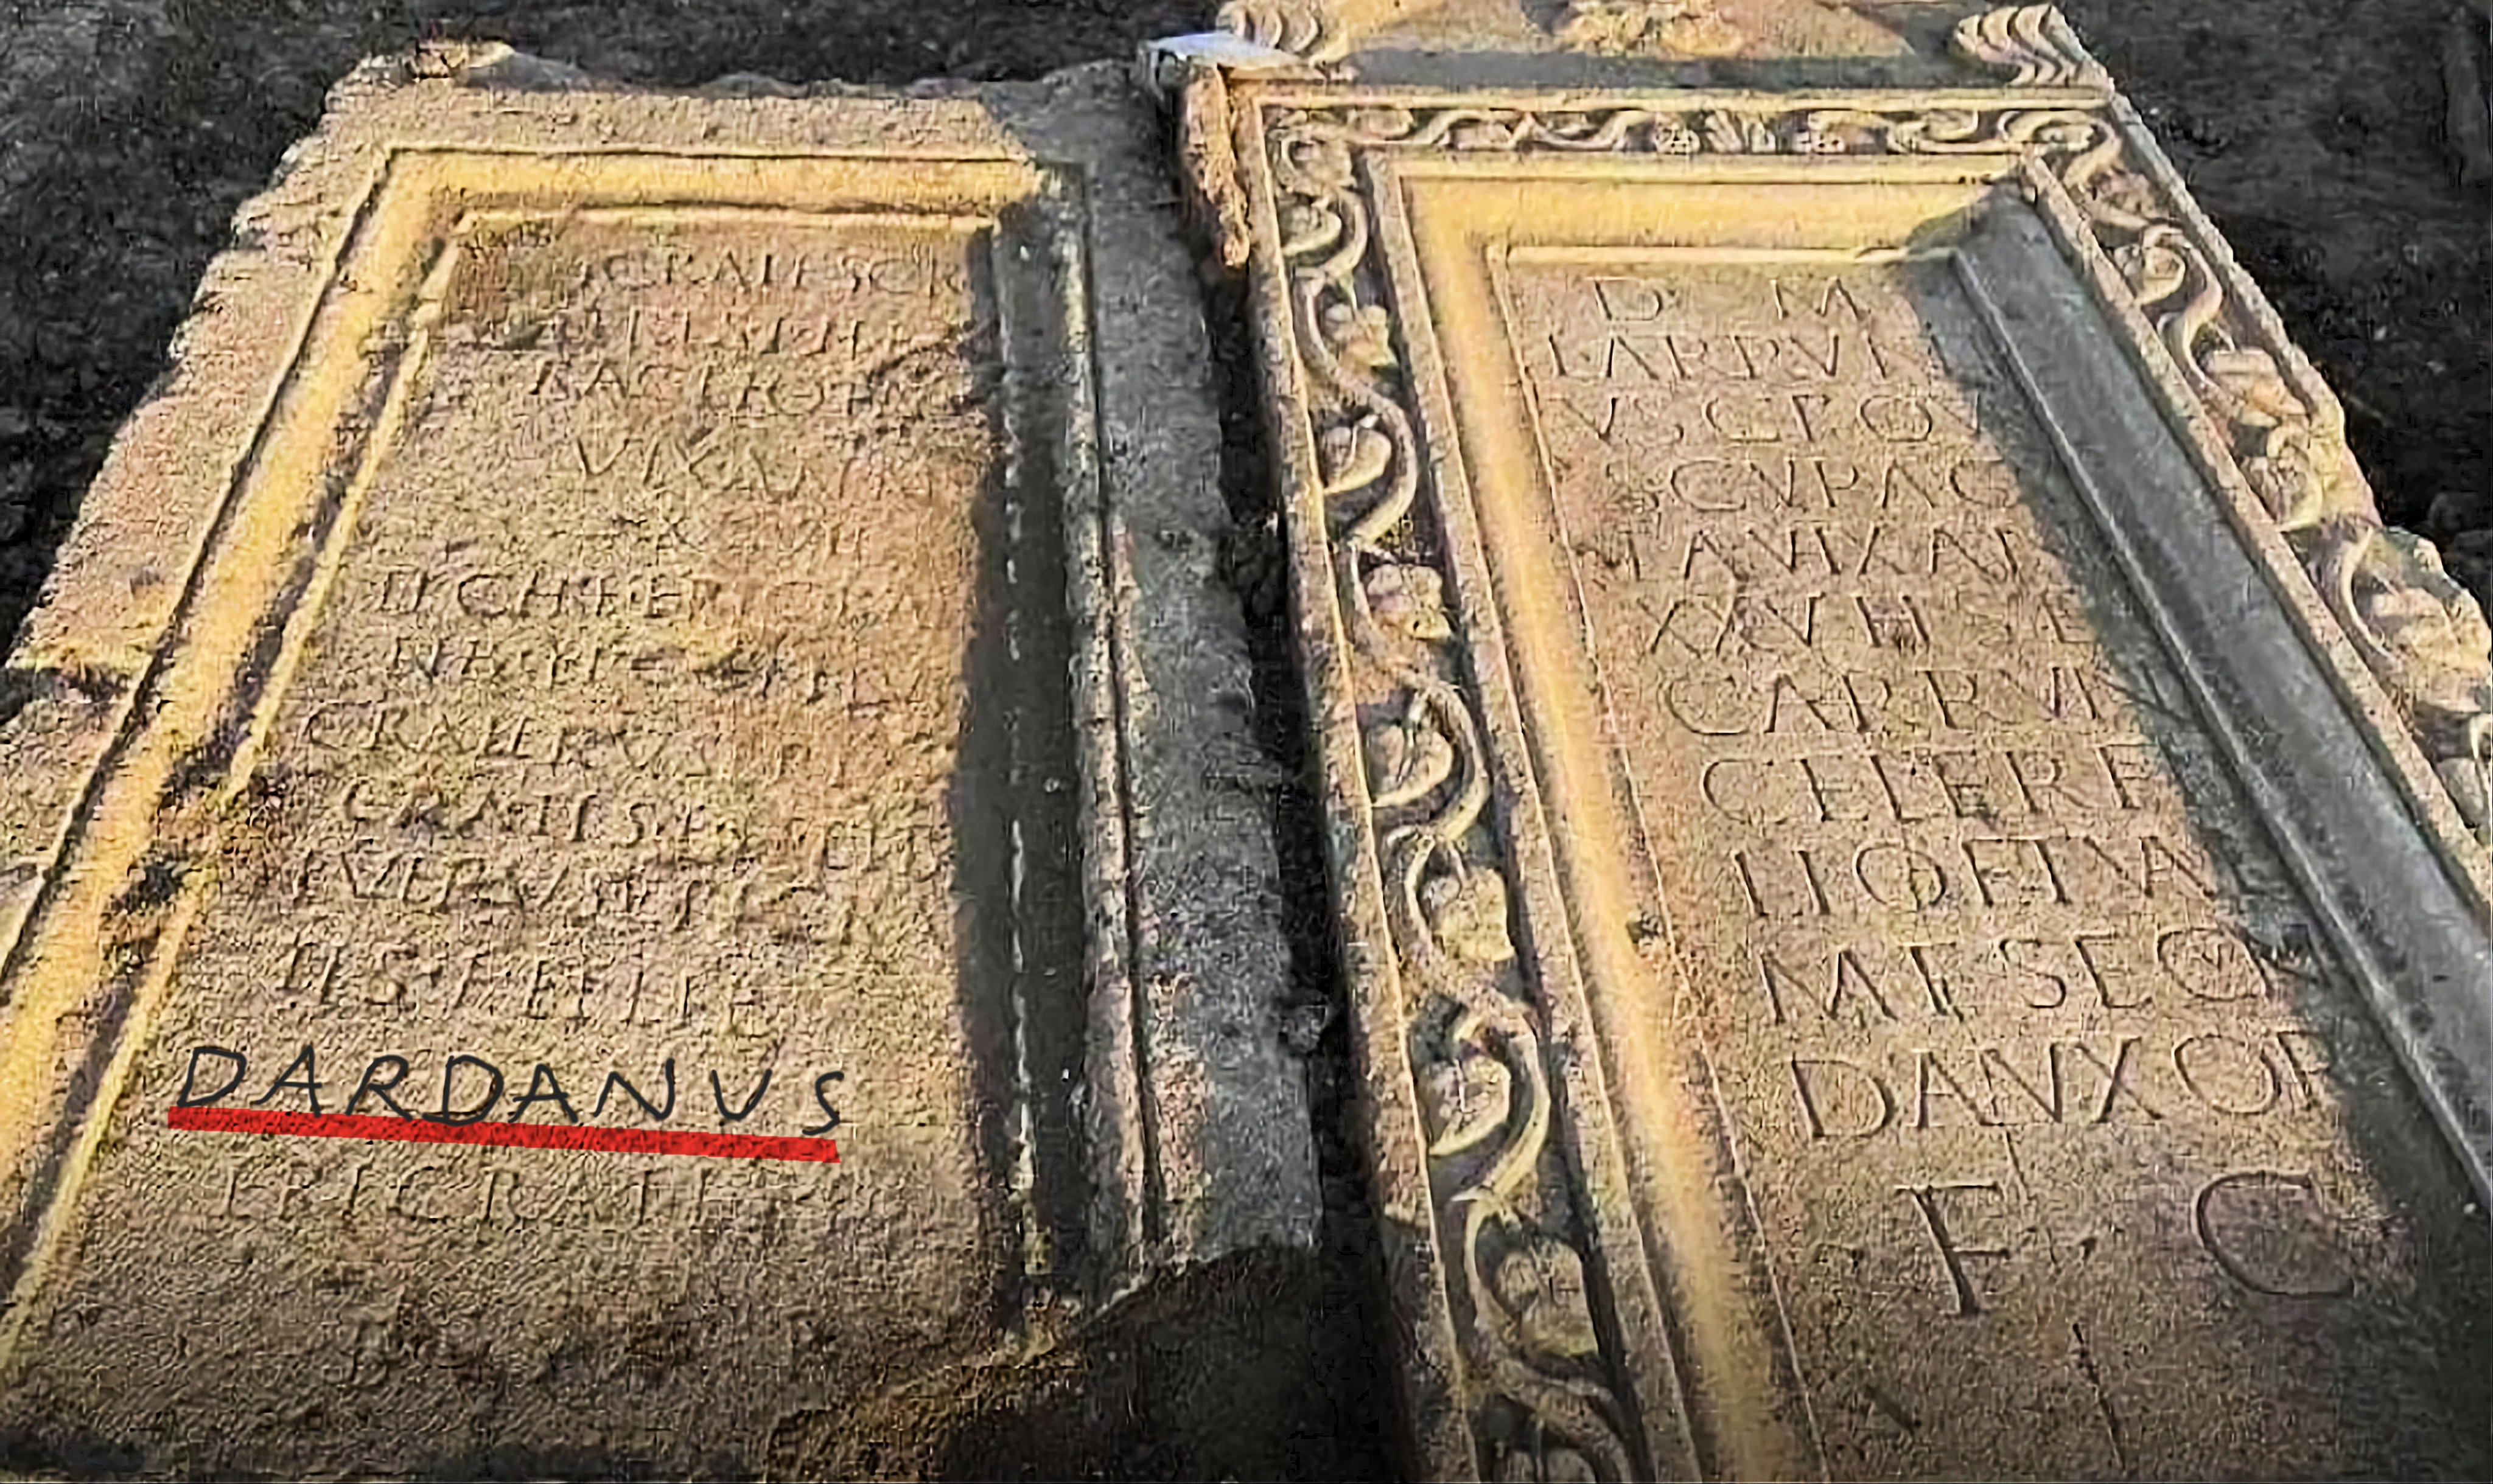 Një pllakë me mbishkrimin “Dardanus” gjendet në Shkup, hiqet për t’i hapur rrugën ndërtimit të një pallati